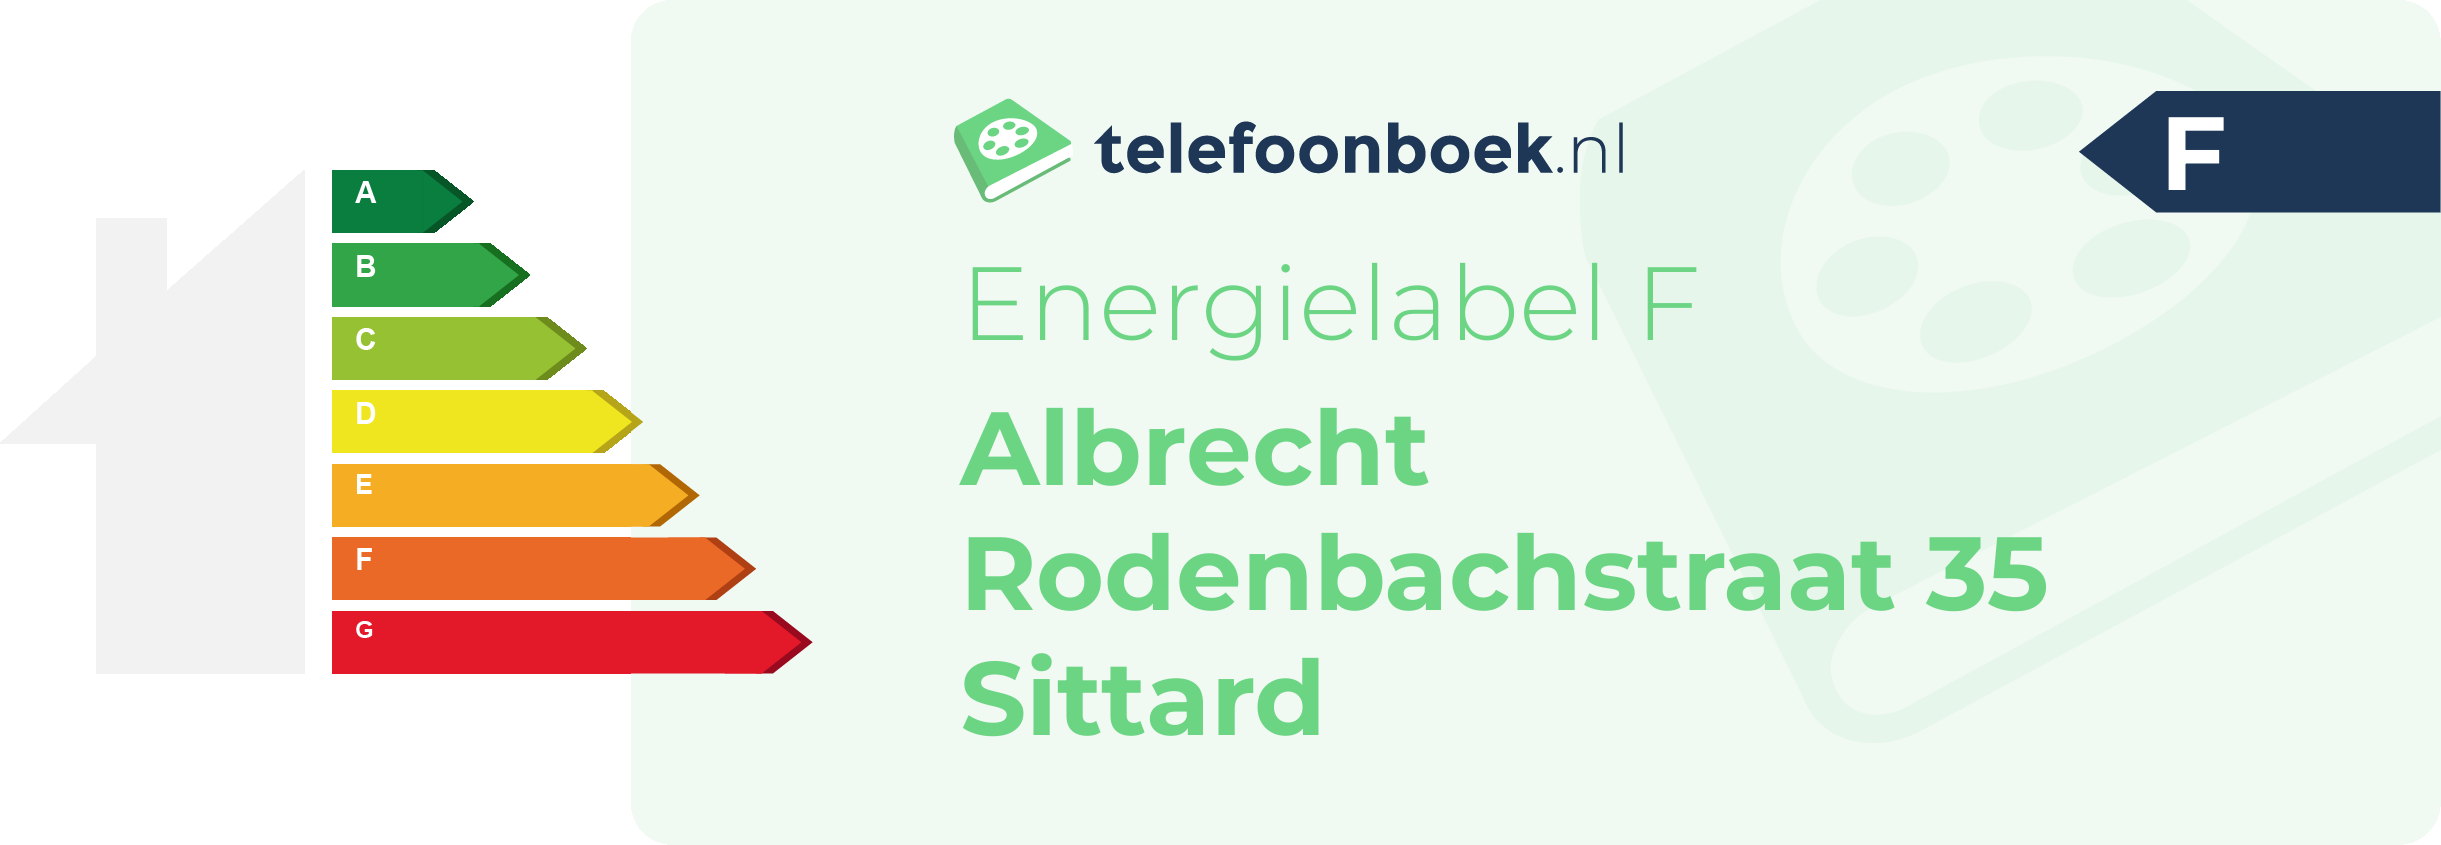 Energielabel Albrecht Rodenbachstraat 35 Sittard